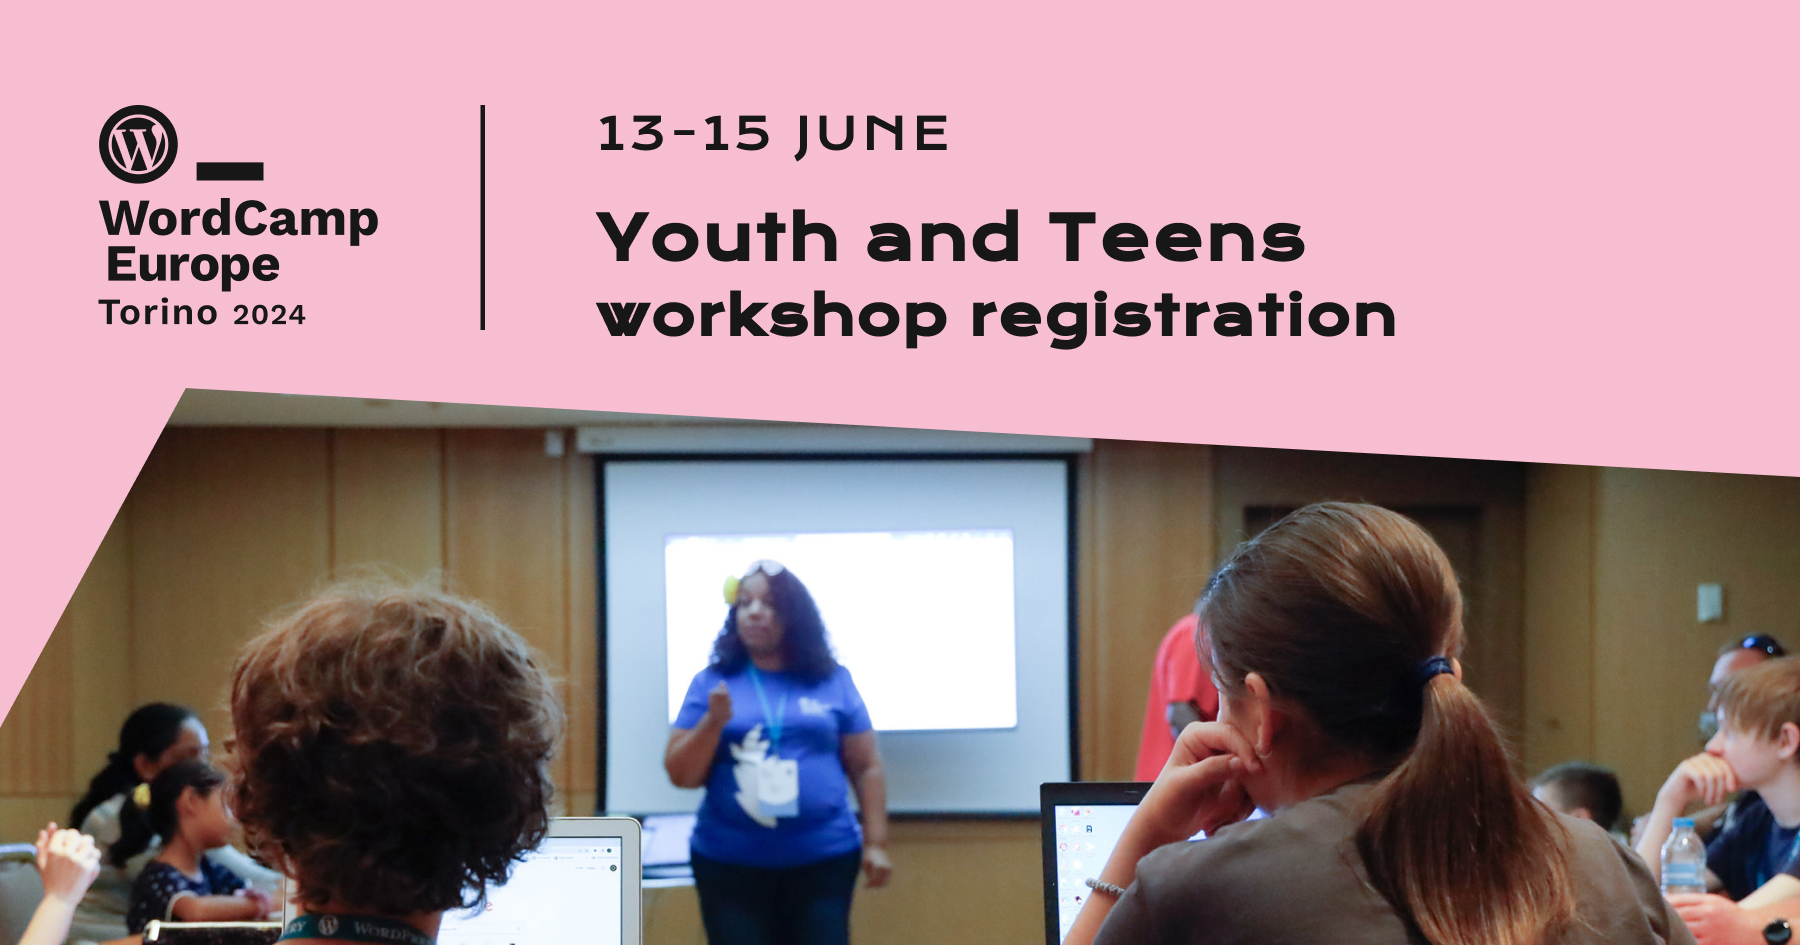 Youth & Teens Workshop at WordCamp Europe 2024